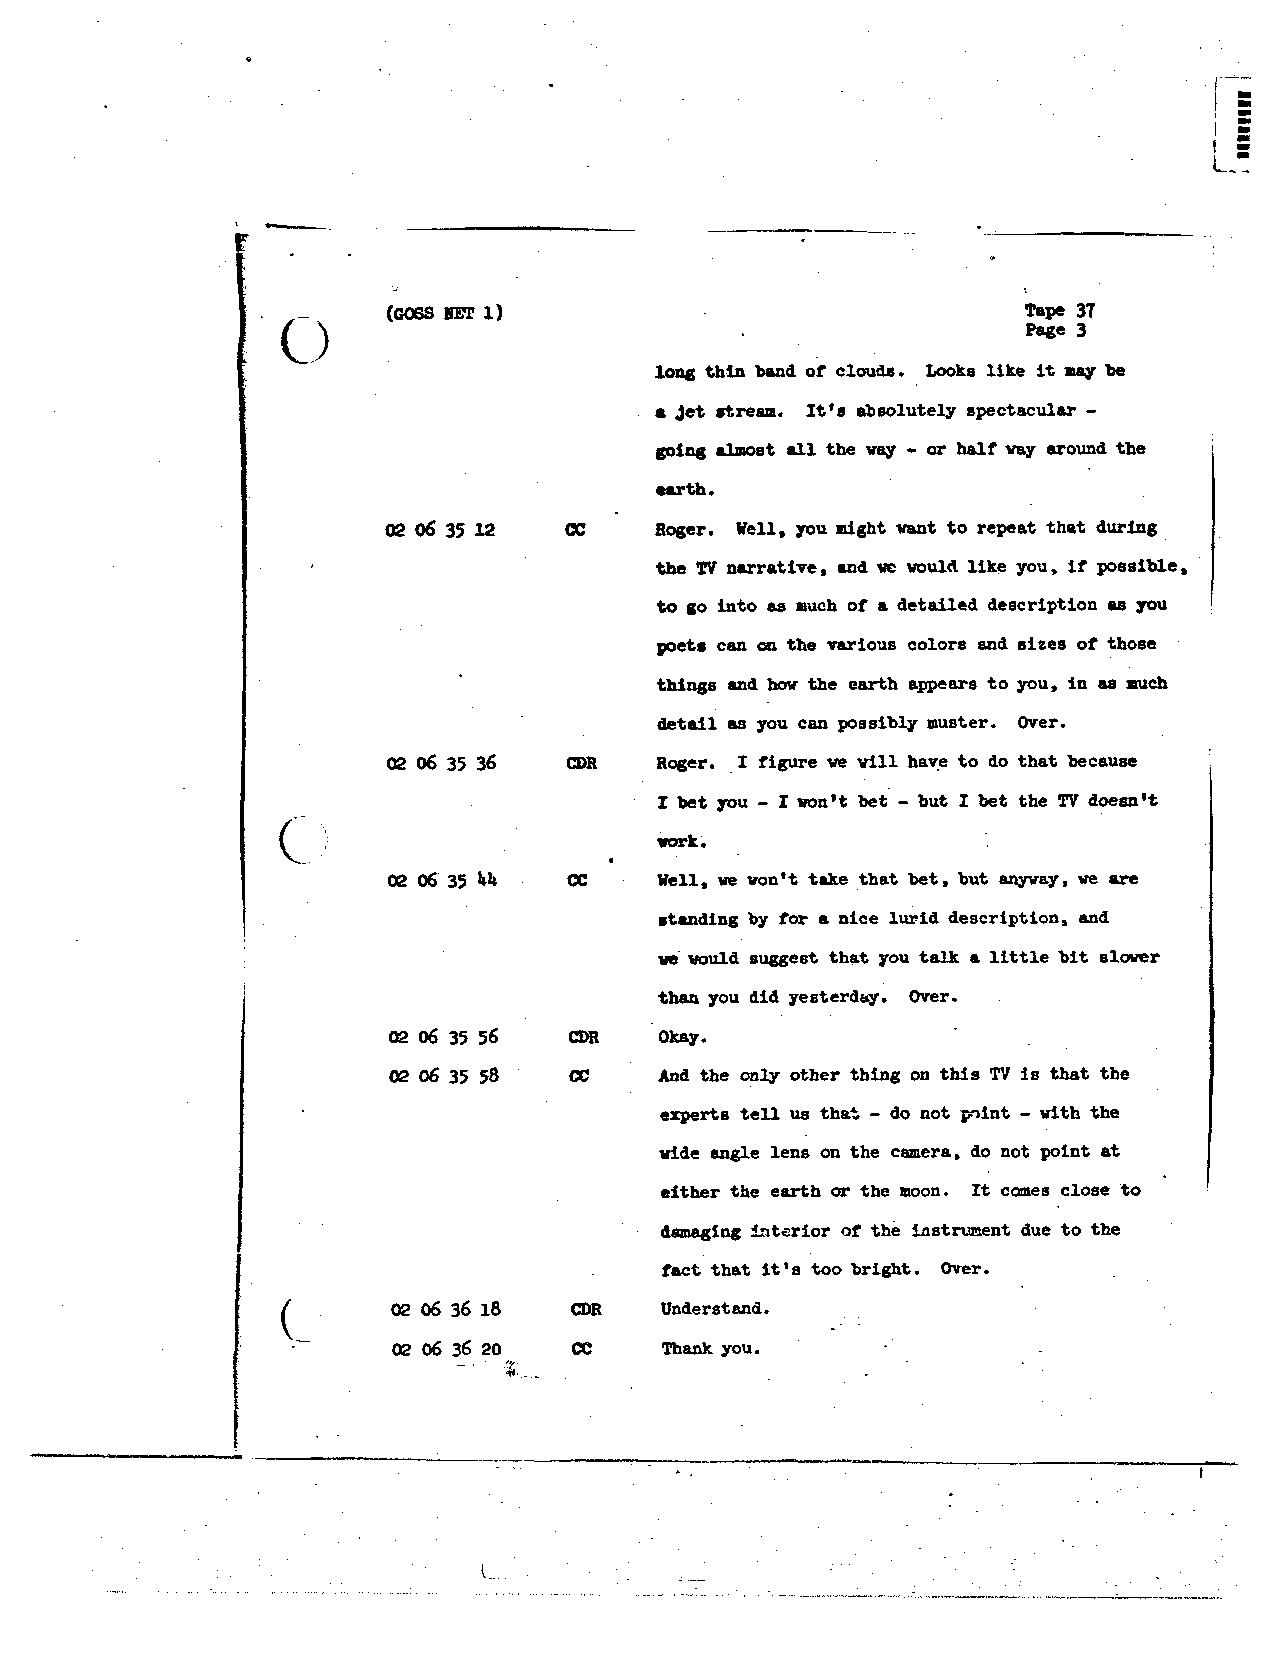 Page 285 of Apollo 8’s original transcript